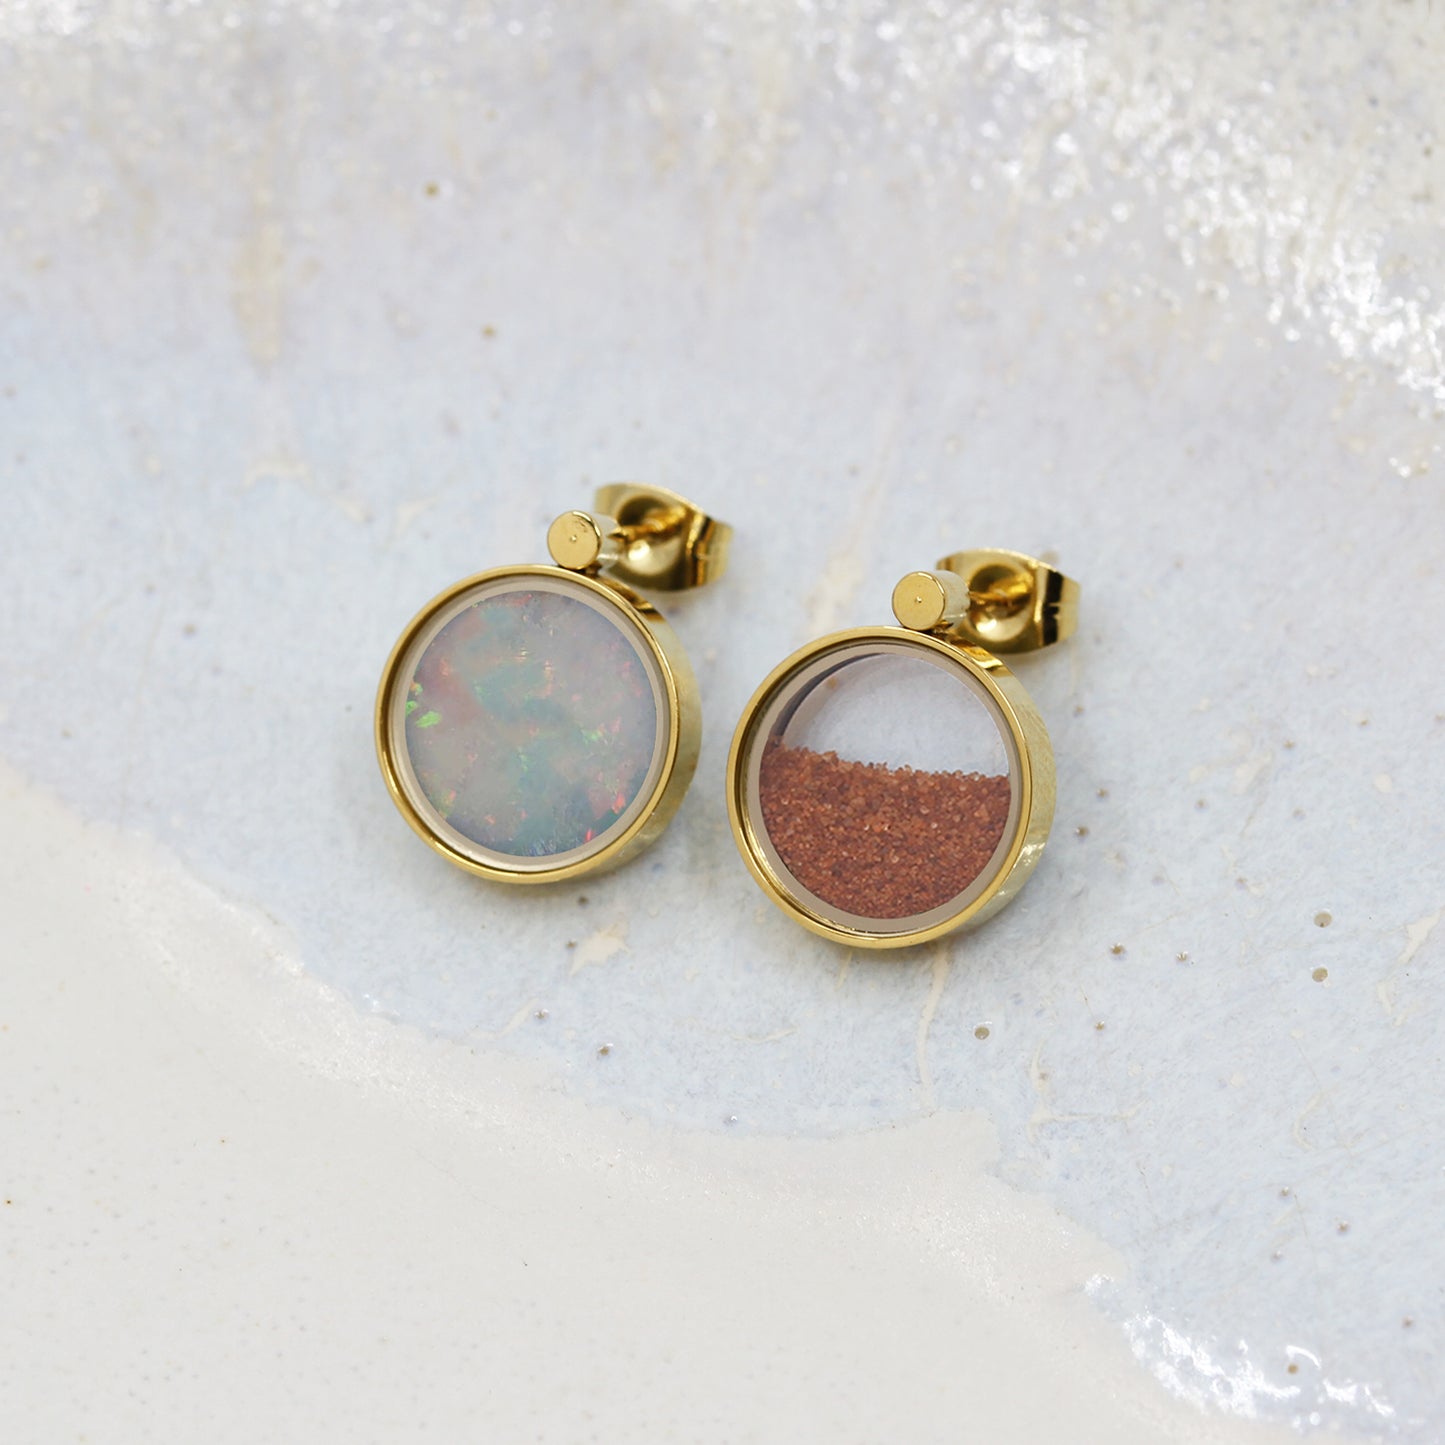 Australian Opal & Australian Red Sand Earrings